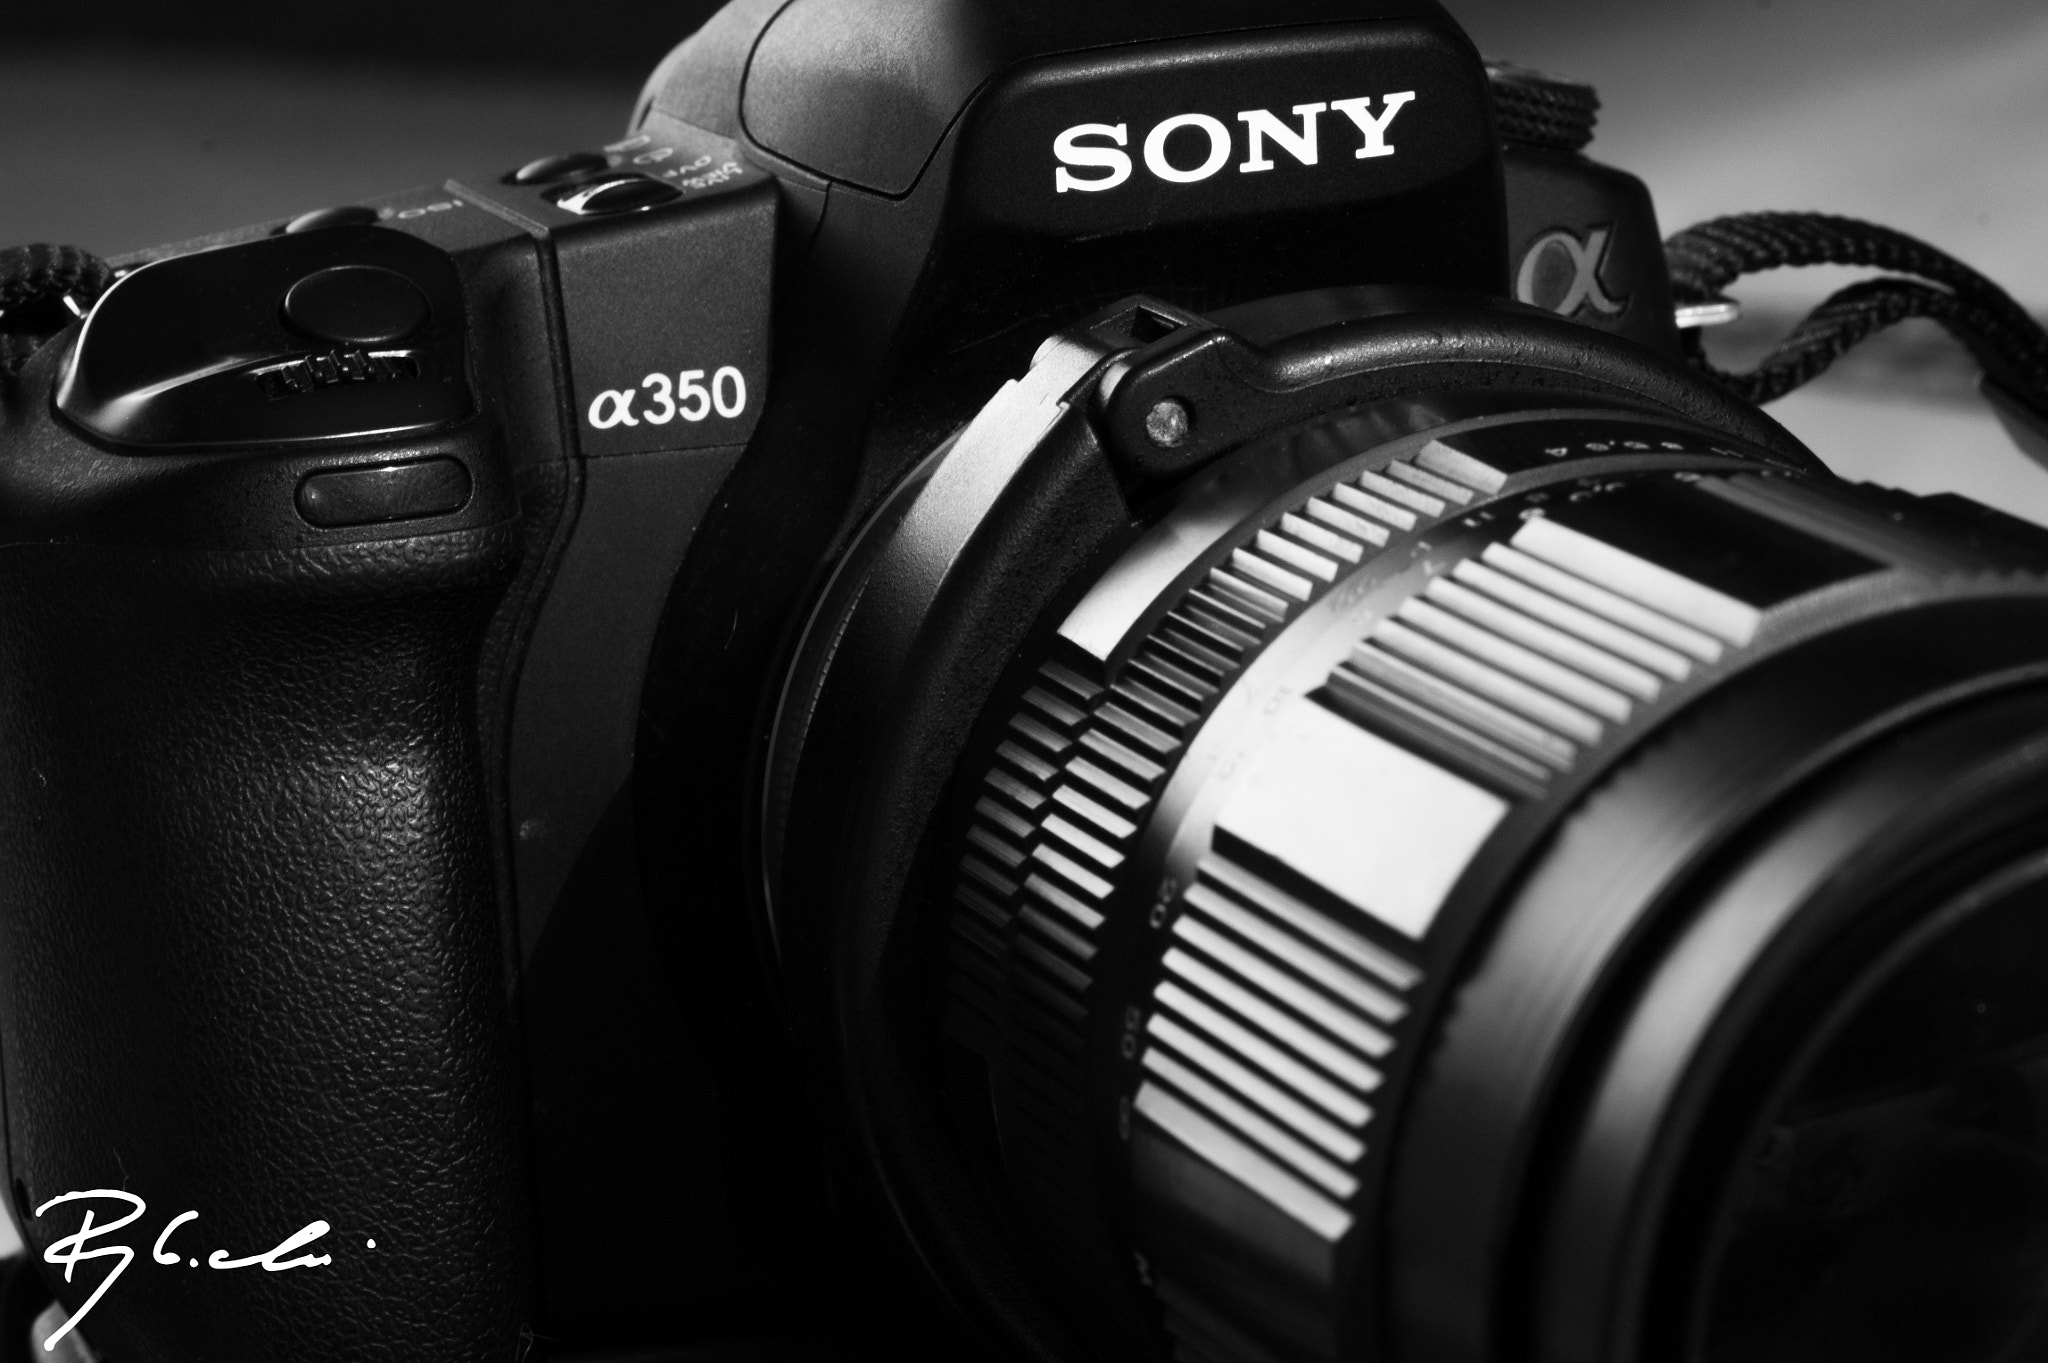 Sony Alpha DSLR-A550 sample photo. Sony & jupiter m21 photography